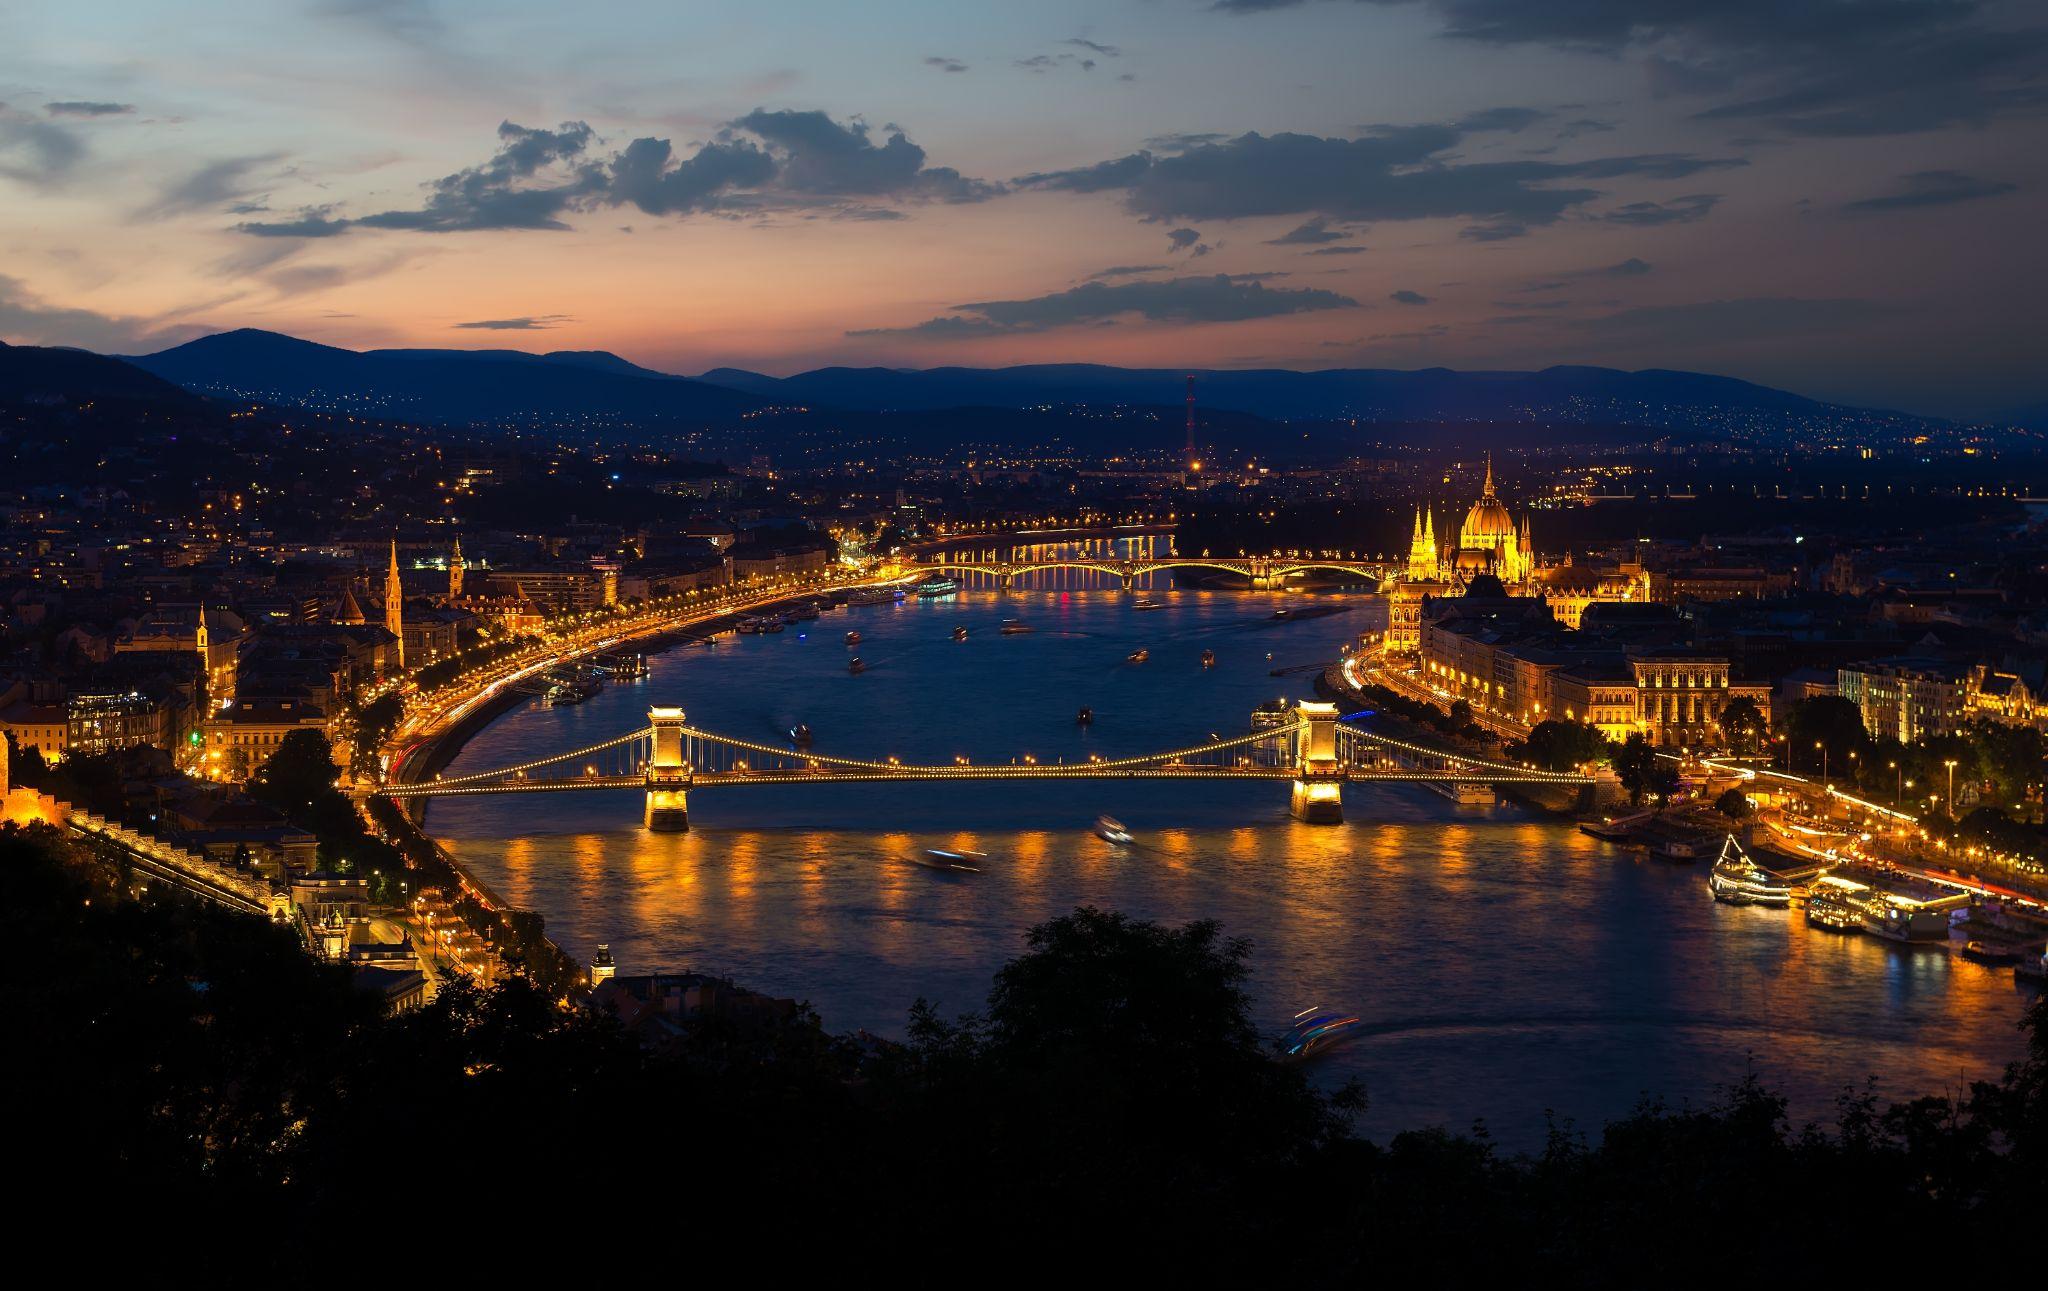 Budapest legimpozánsabb szállodái és látnivalói